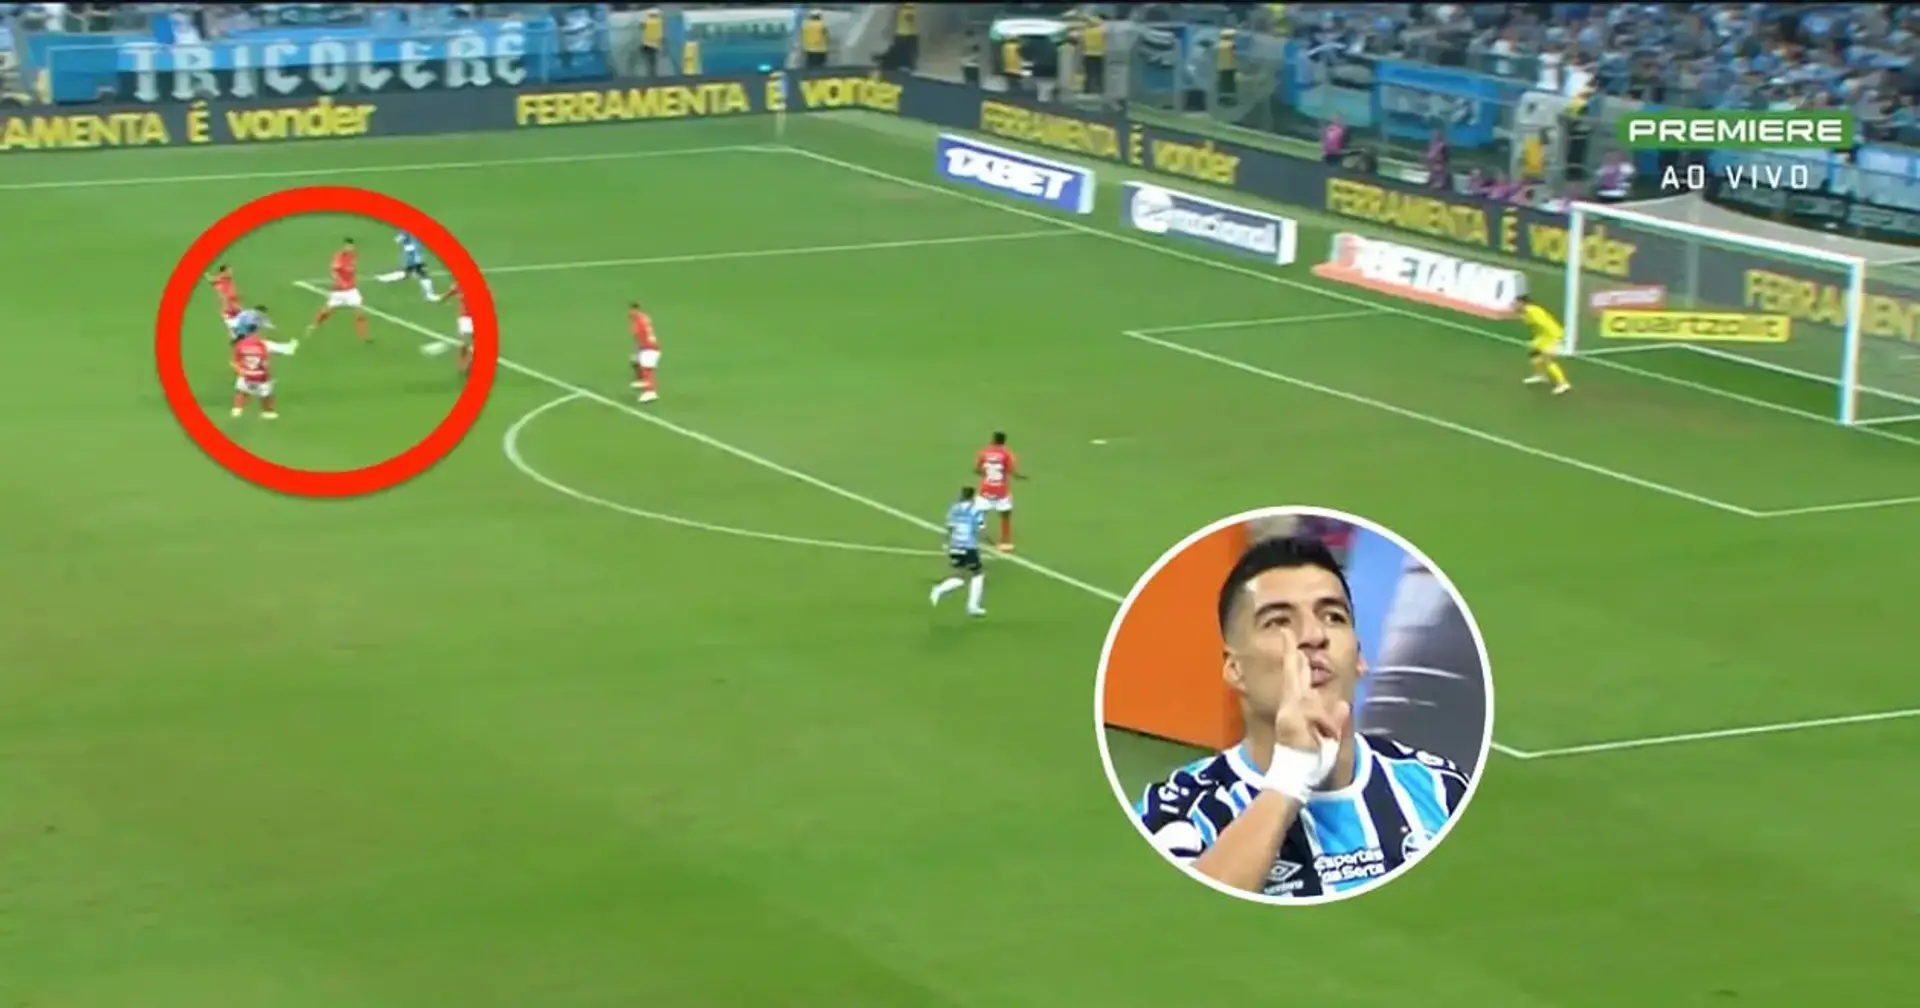 Luis Suárez vergessen? Vergeblich: Er schießt immer noch magische Tore, die einen einfach nicht loslassen (VIDEO)